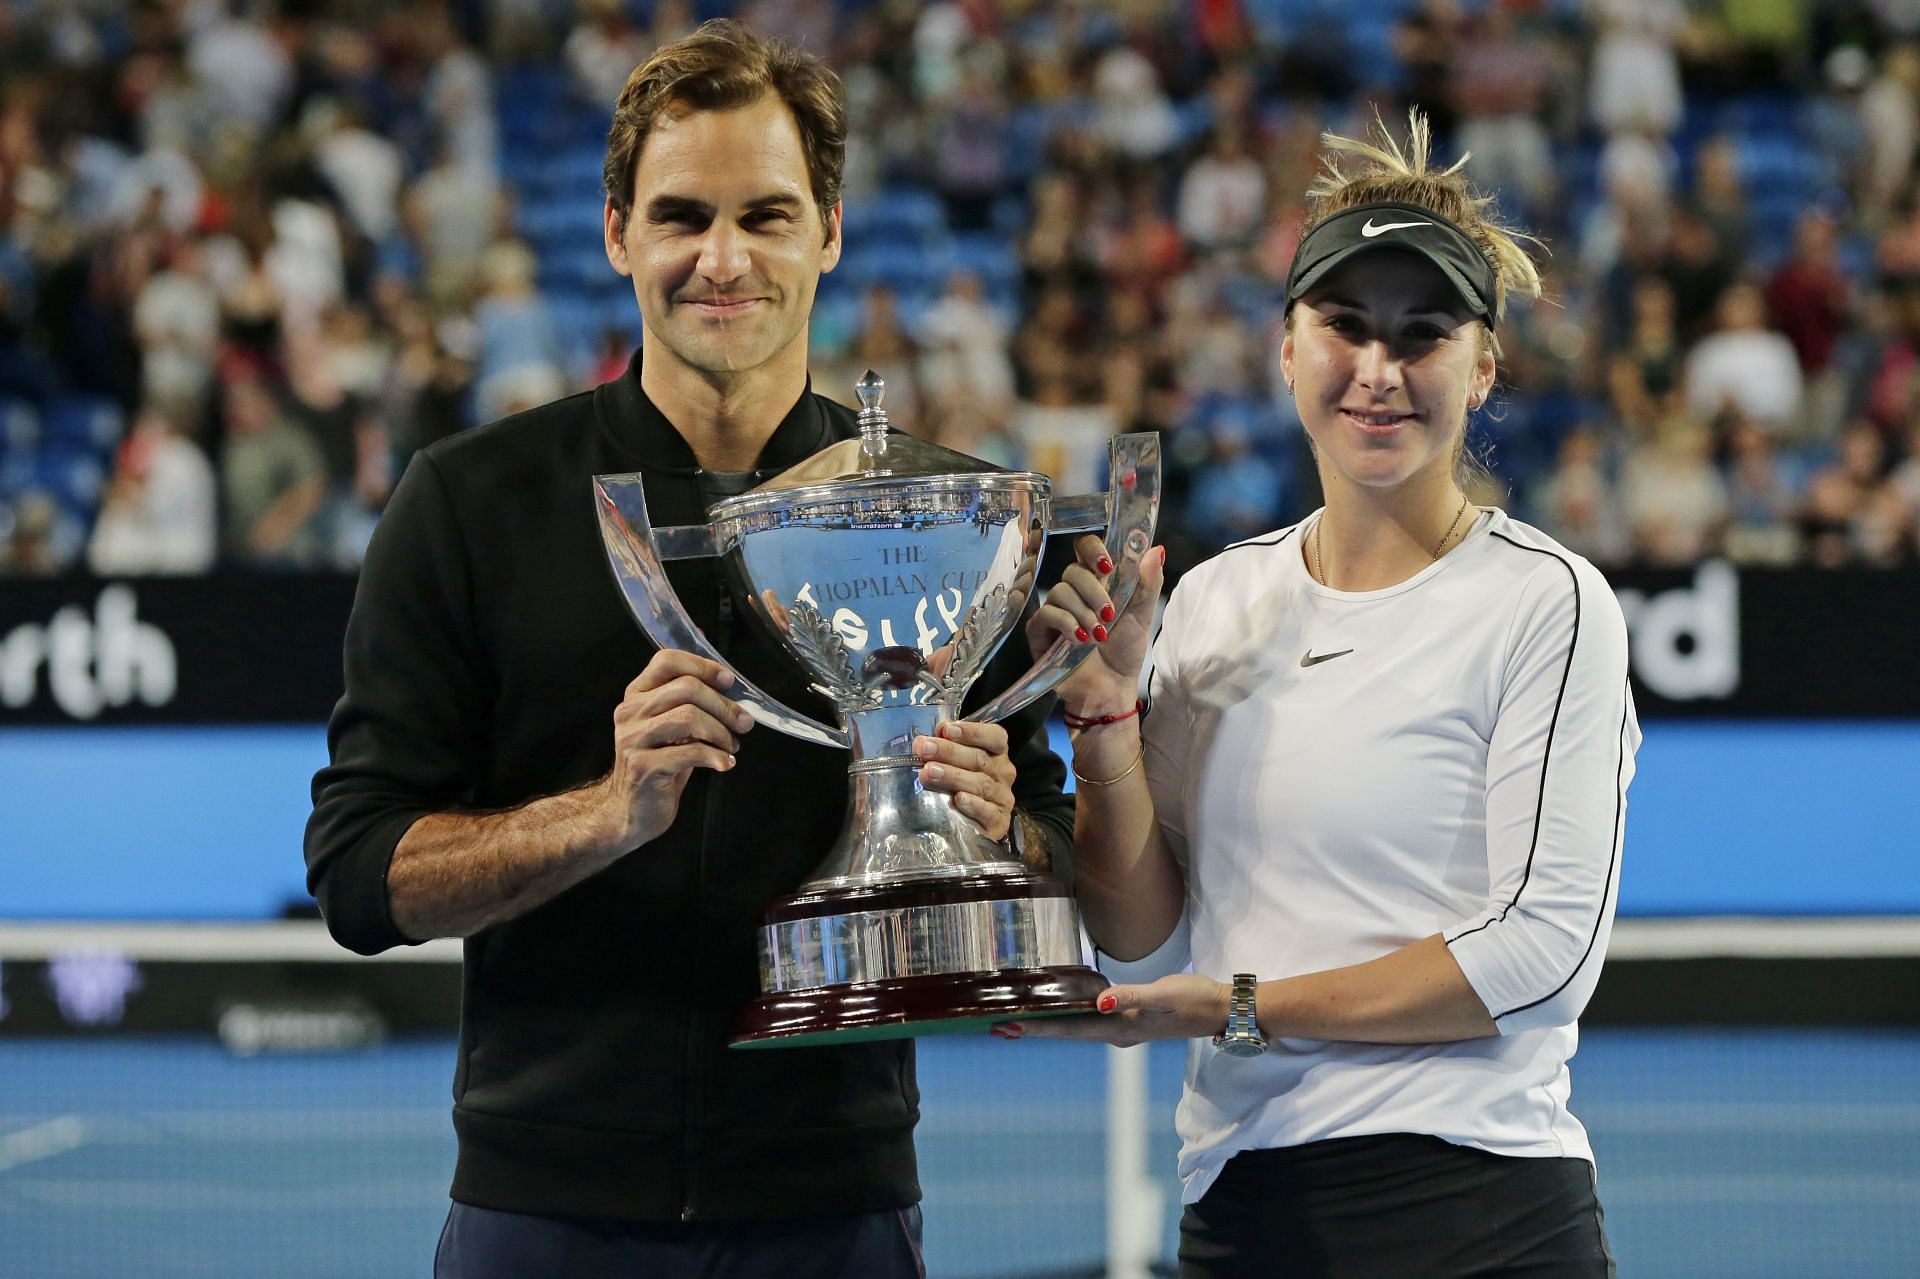 Roger Federer and Belinda Bencic celebrate winning the 2019 Hopman Cup